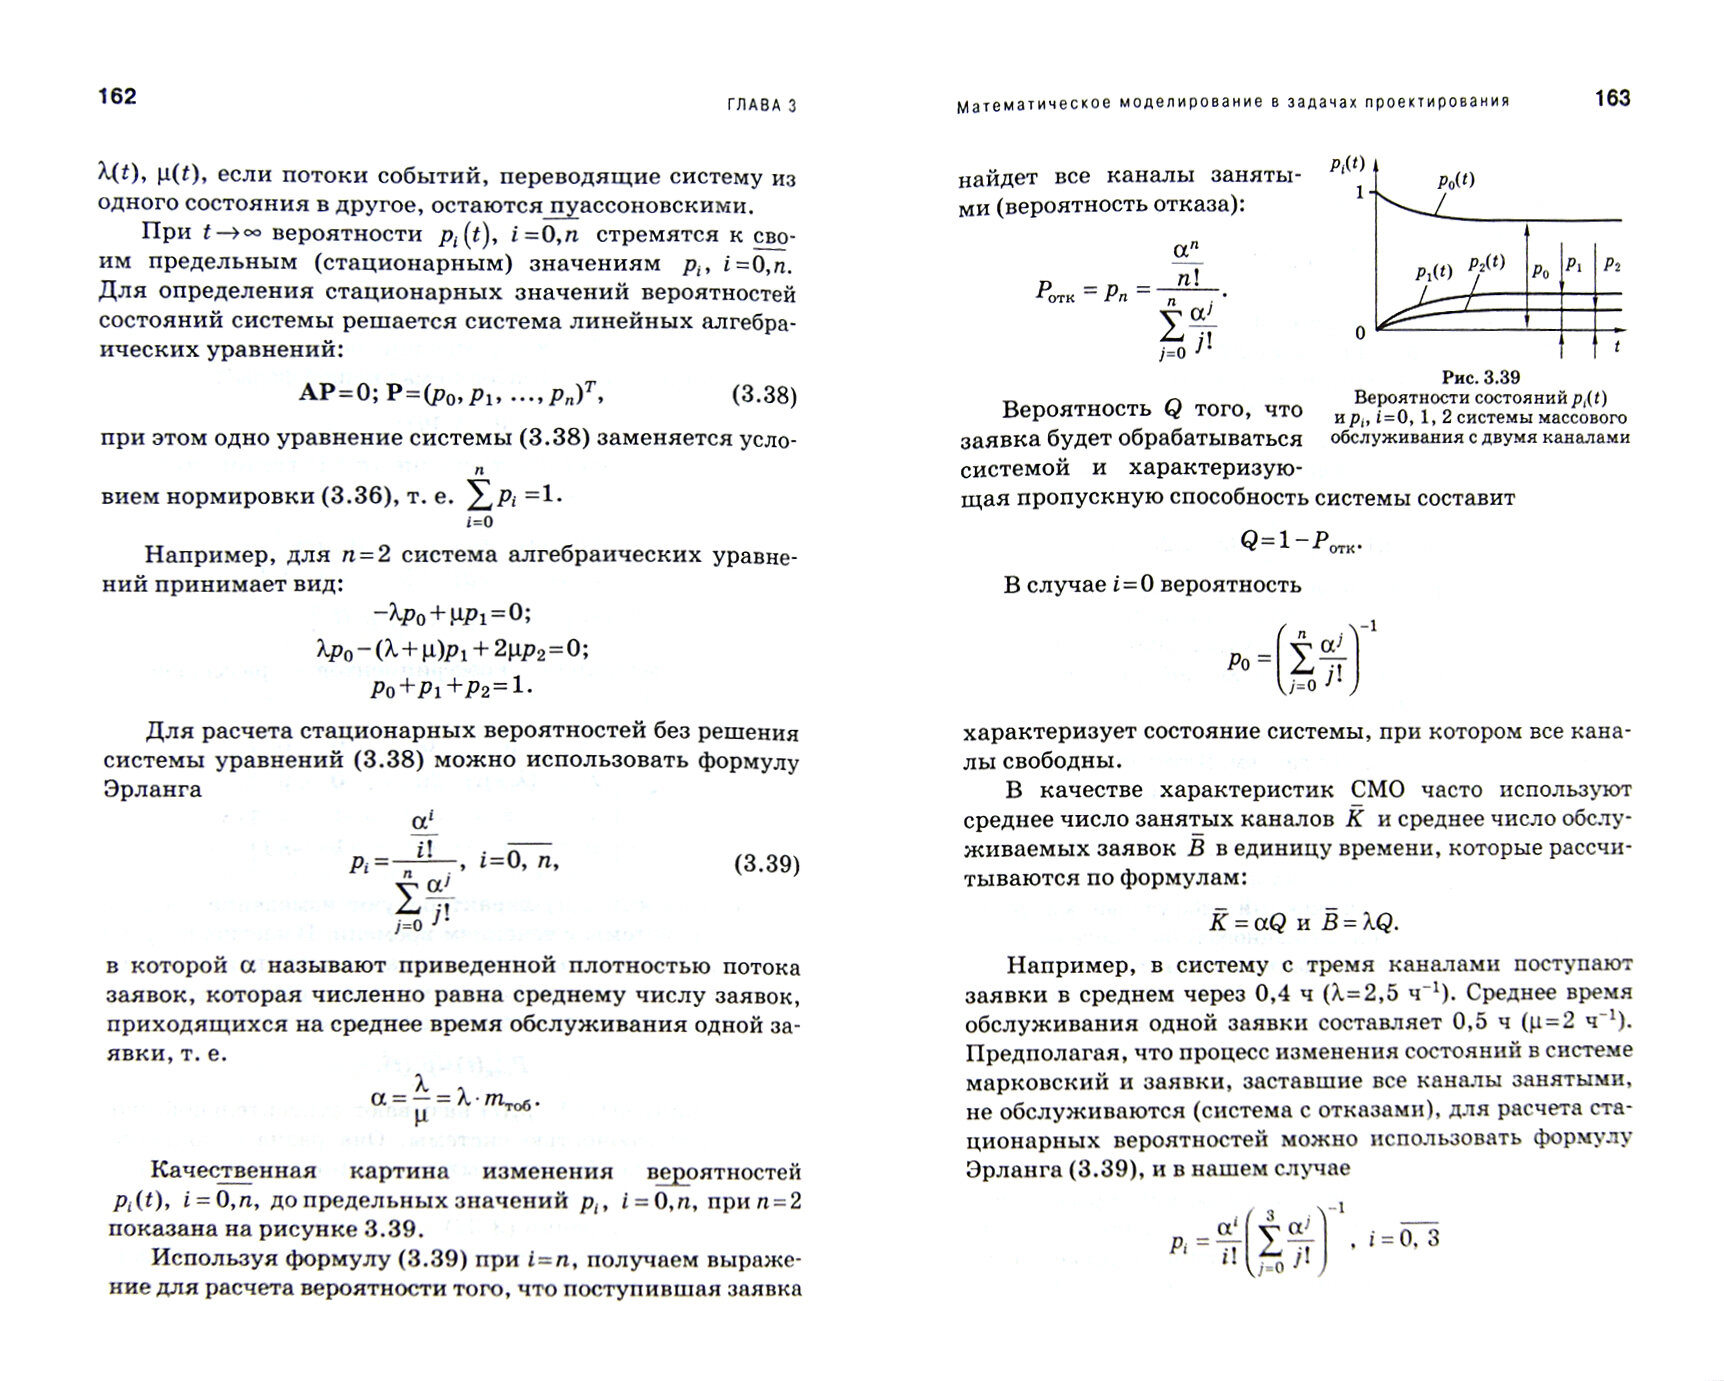 Математическое обеспечение САПР. Учебное пособие - фото №3